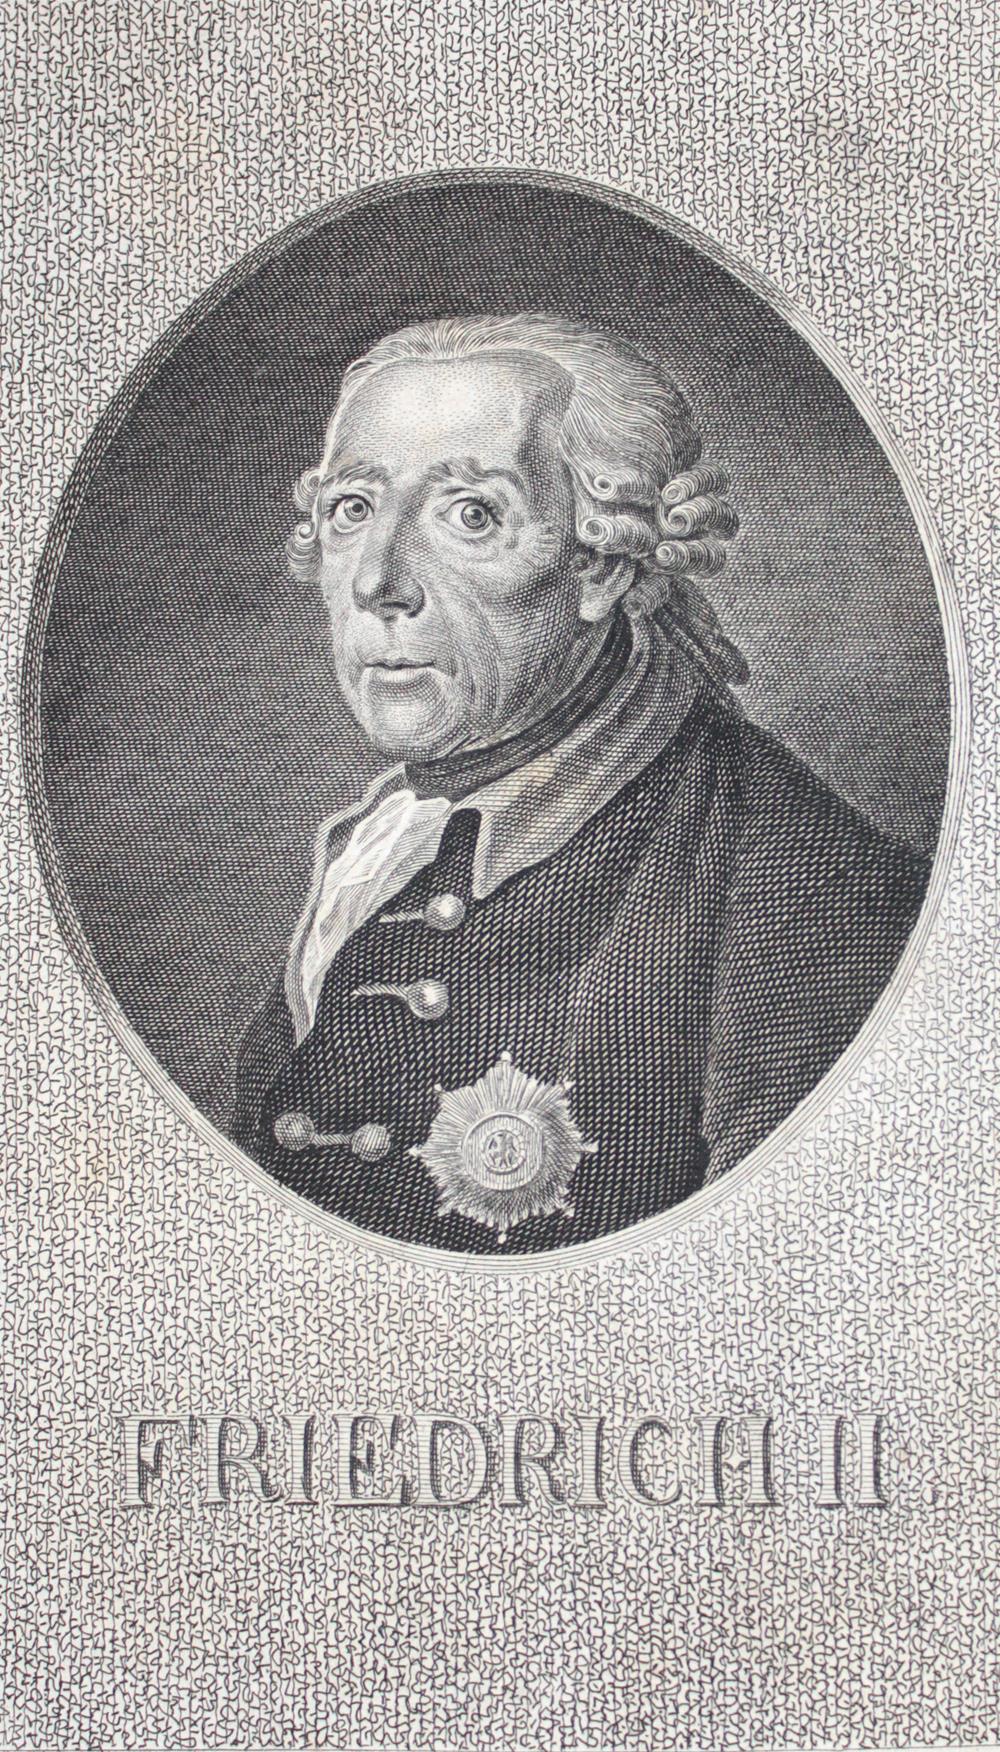 Friedrich II.